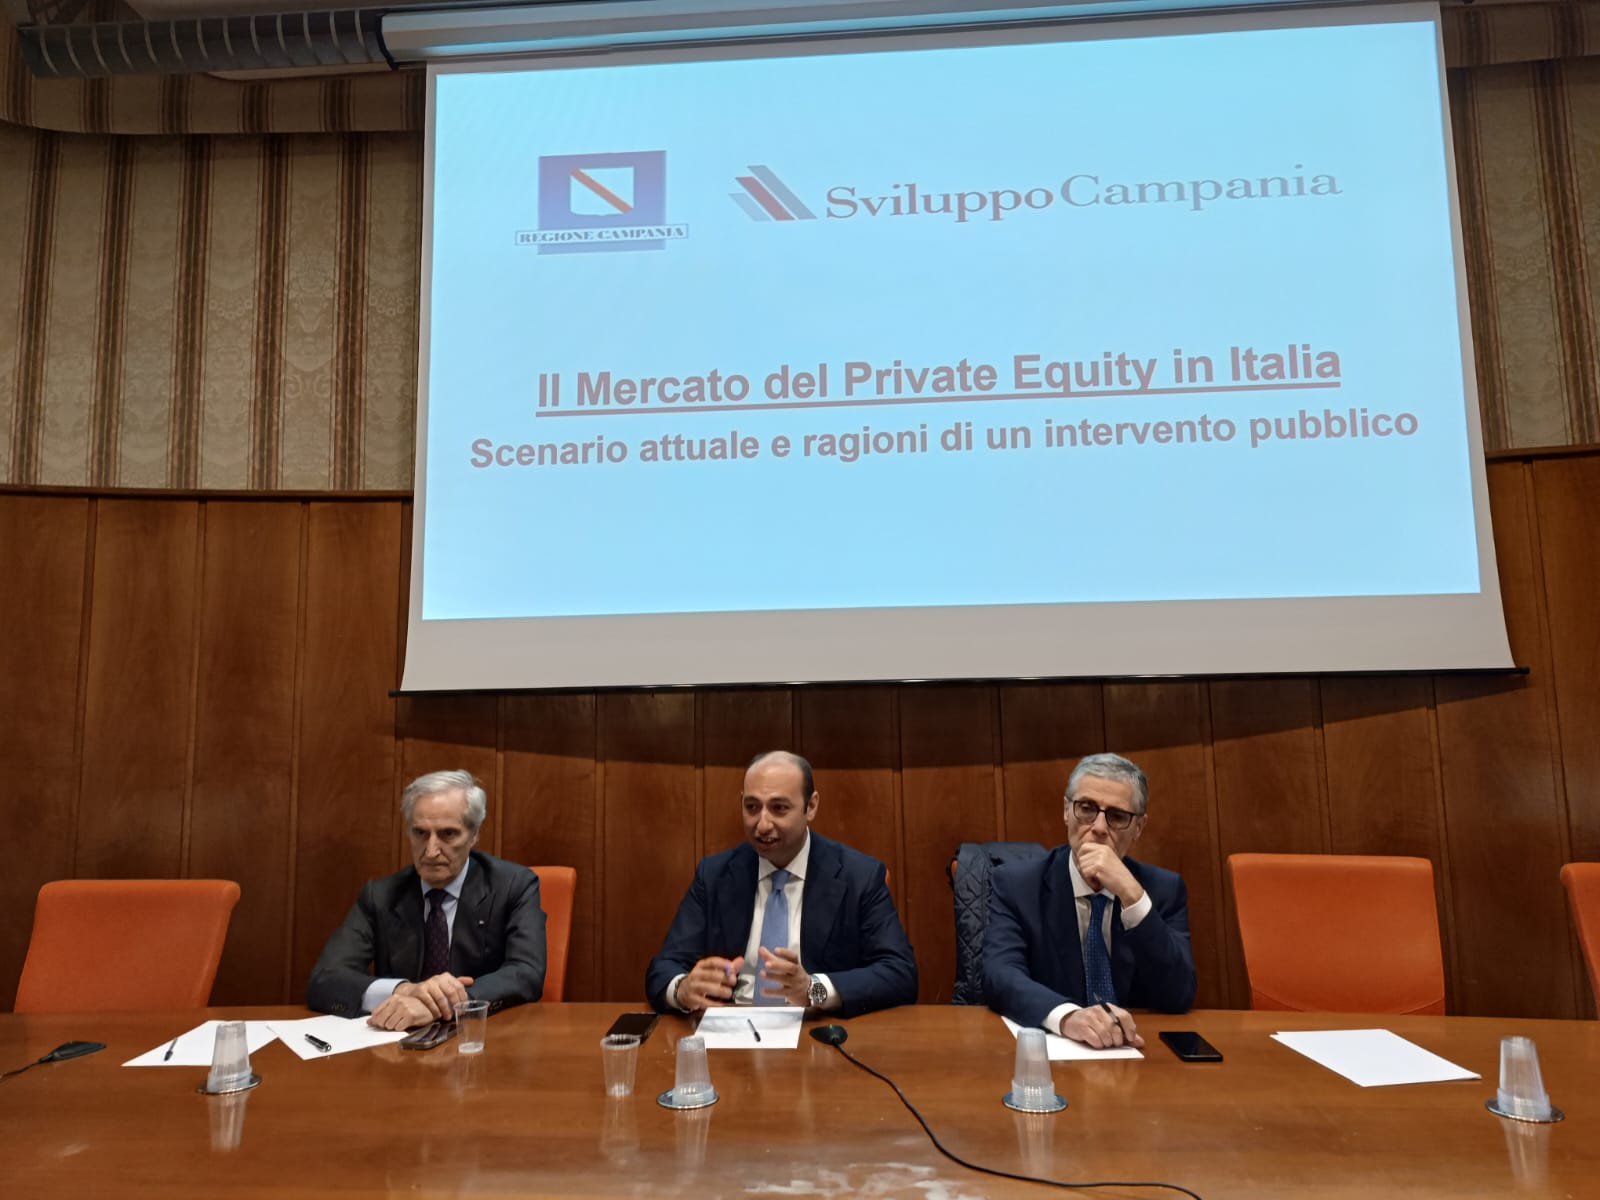 Liquidez y crédito, instrumentos financieros para el crecimiento del sistema empresarial presentados en Confindustria Caserta